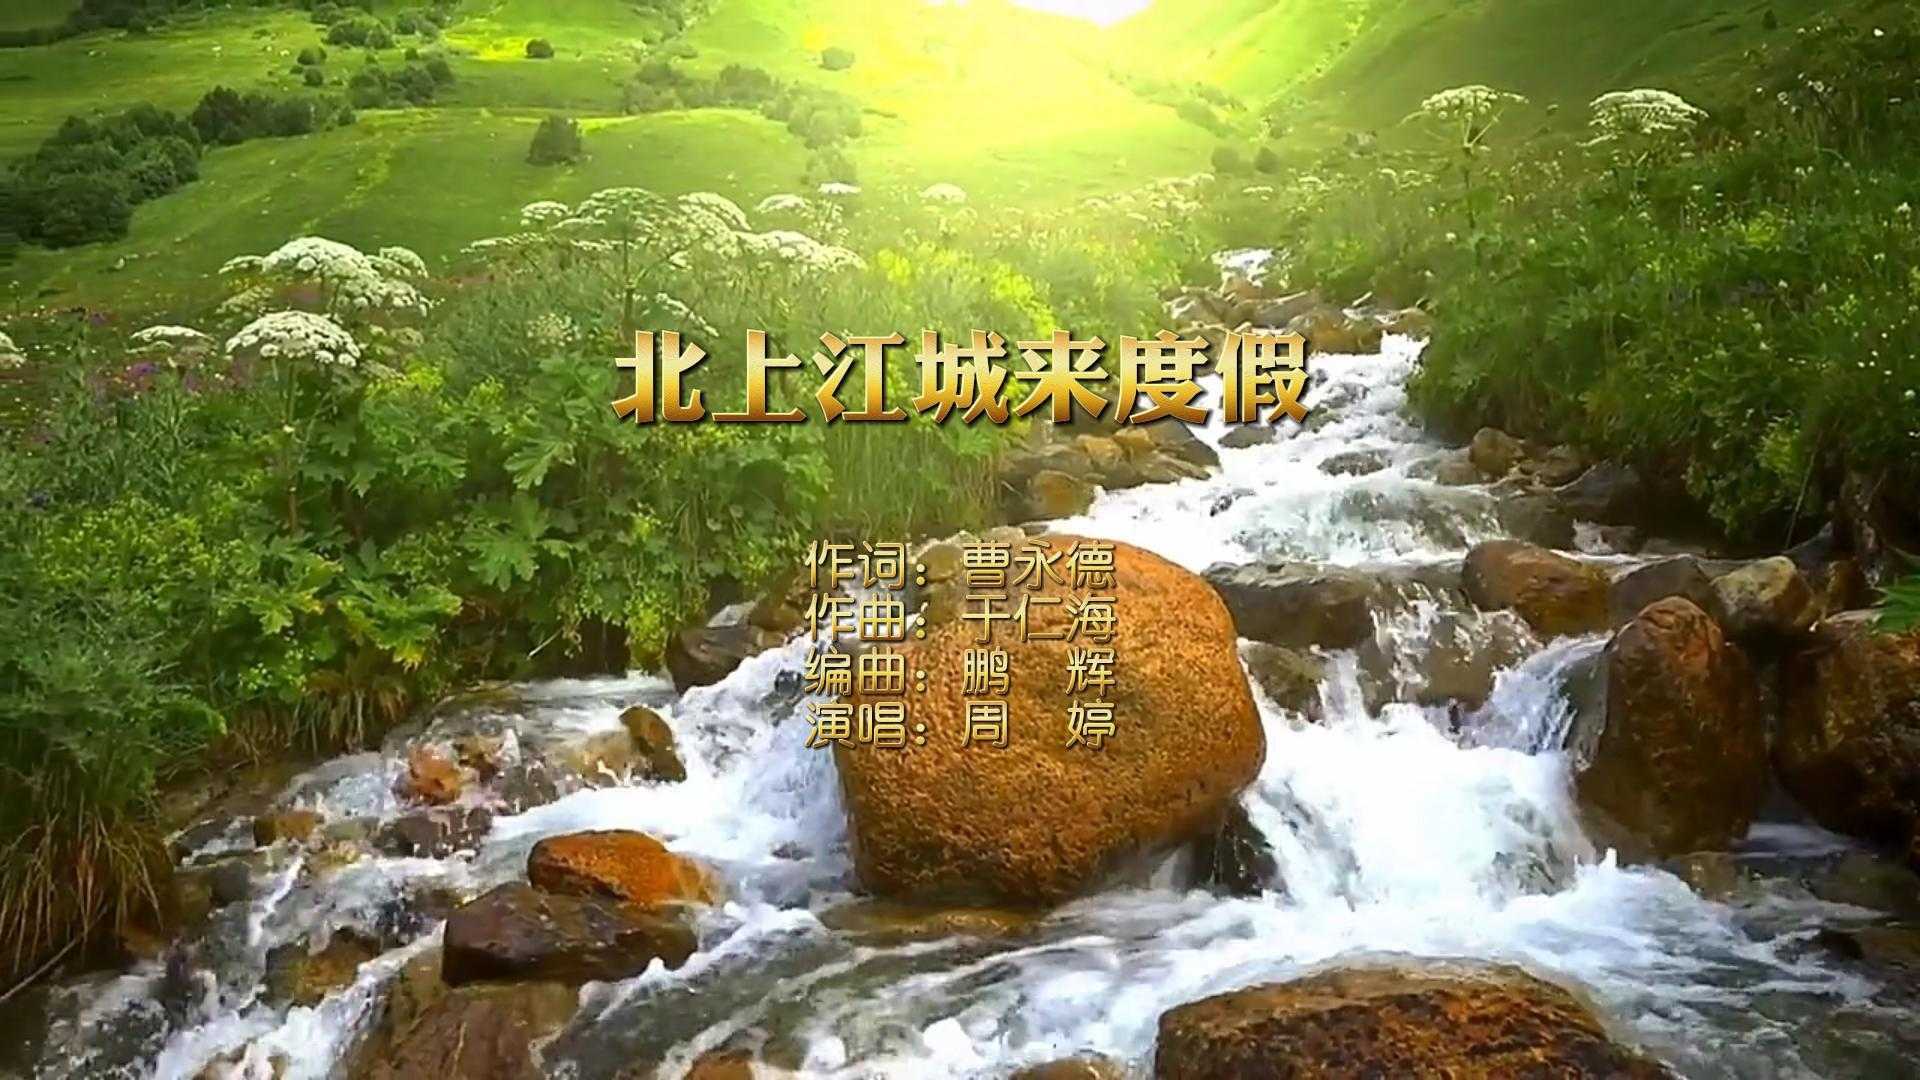 一首优美的吉林市旅游歌曲《北上江城来度假》MV样片欣赏